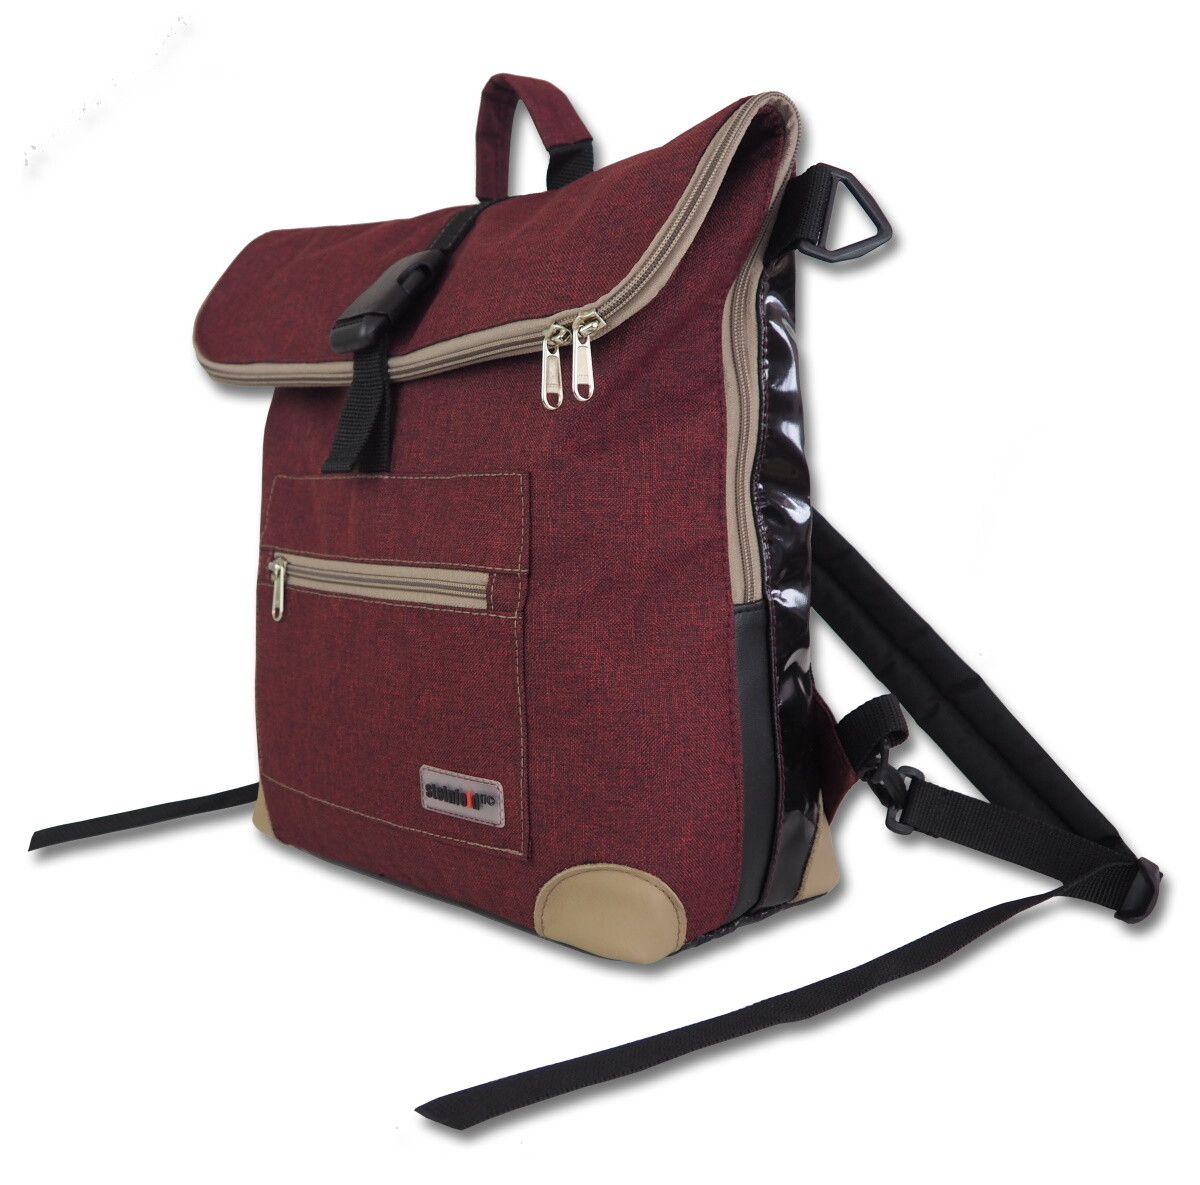 Gepäckträgerrucksack Radl-Ivy, die Große, PES/PVC-Plane-burgund-schwarz-sand